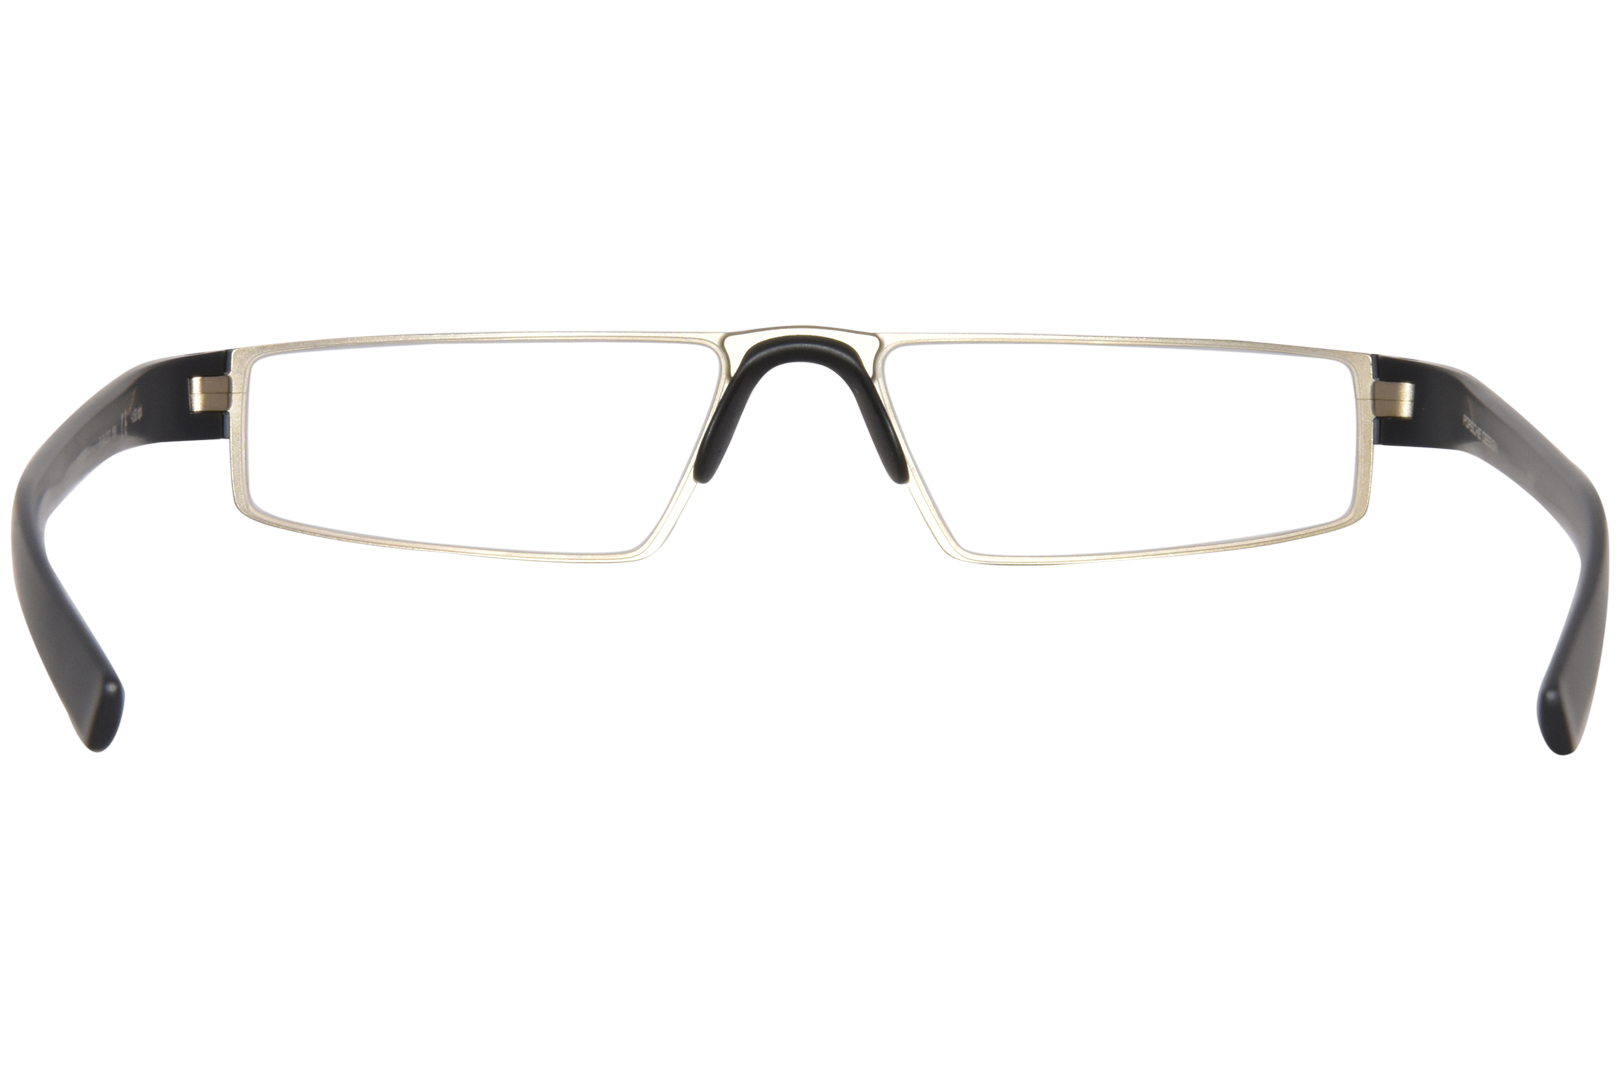 Porsche Design P8814 Reading Glasses Men's Full Rim Rectangle Shape ...